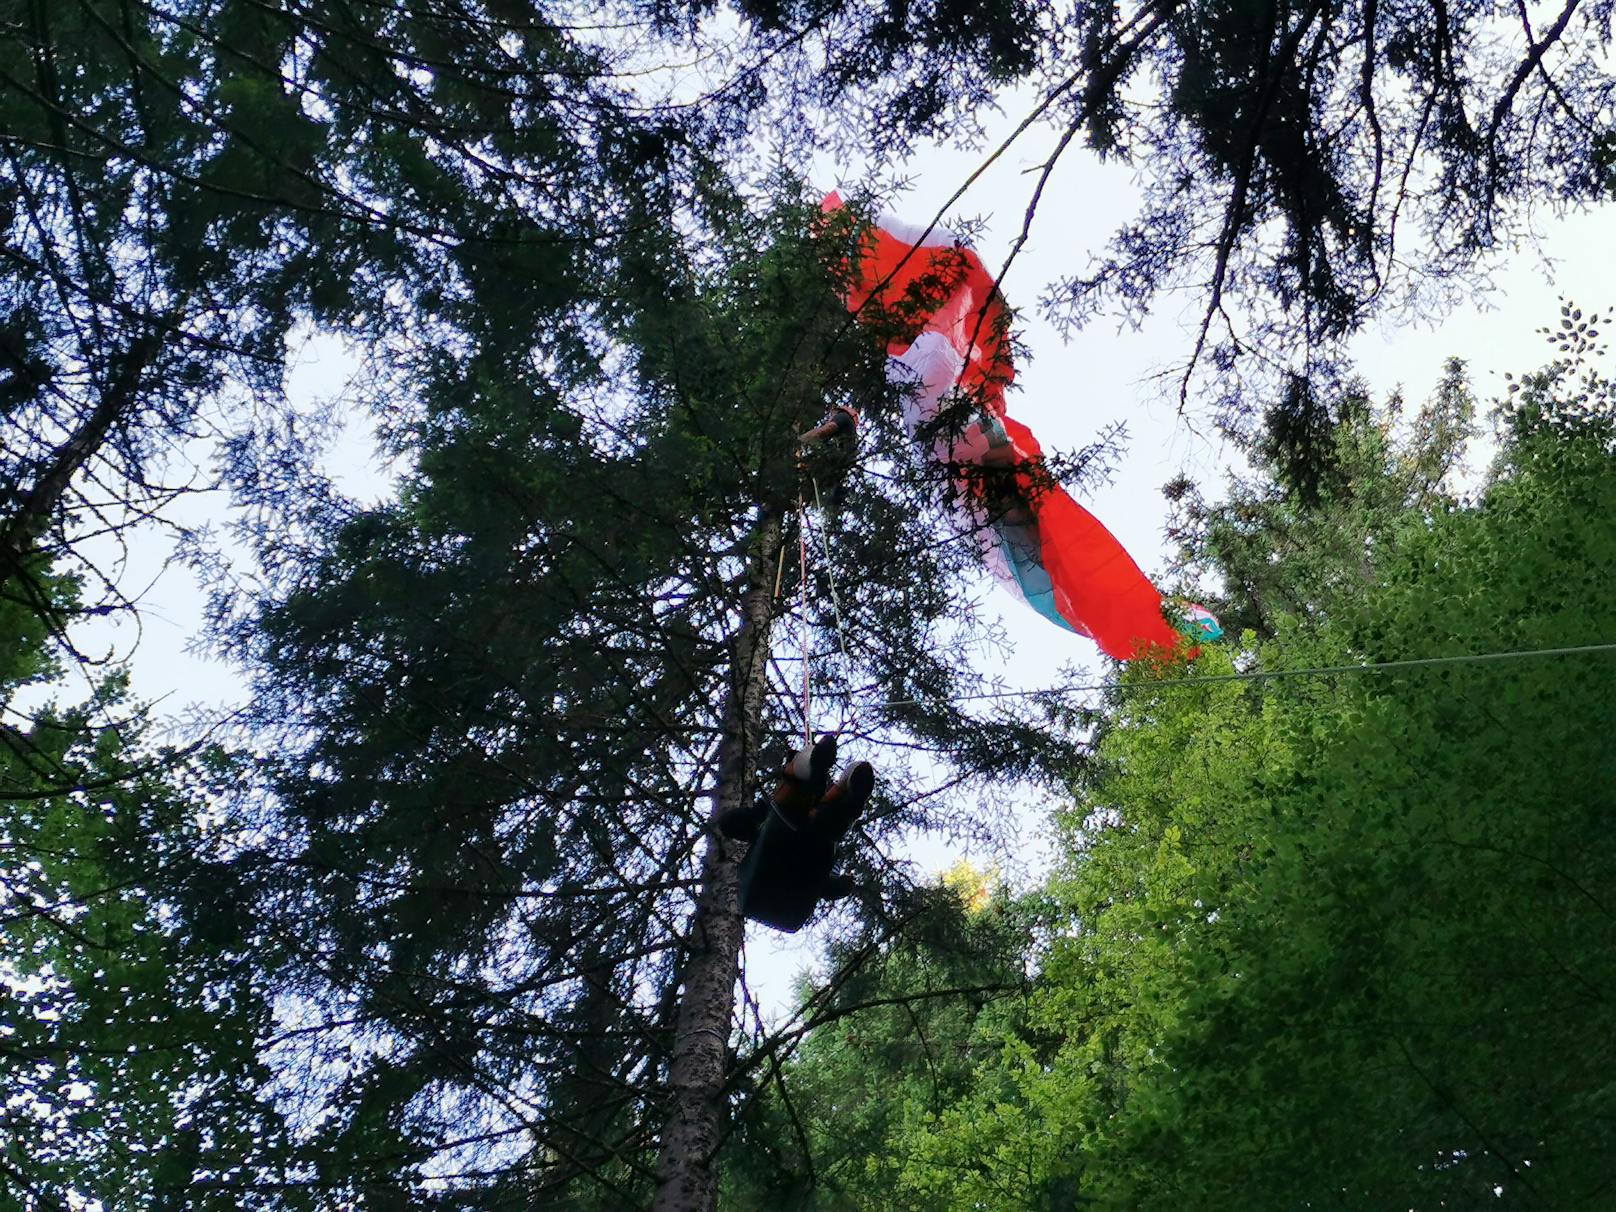 Mann stürzt mit Paragleiter ab, bleibt in Baum hängen